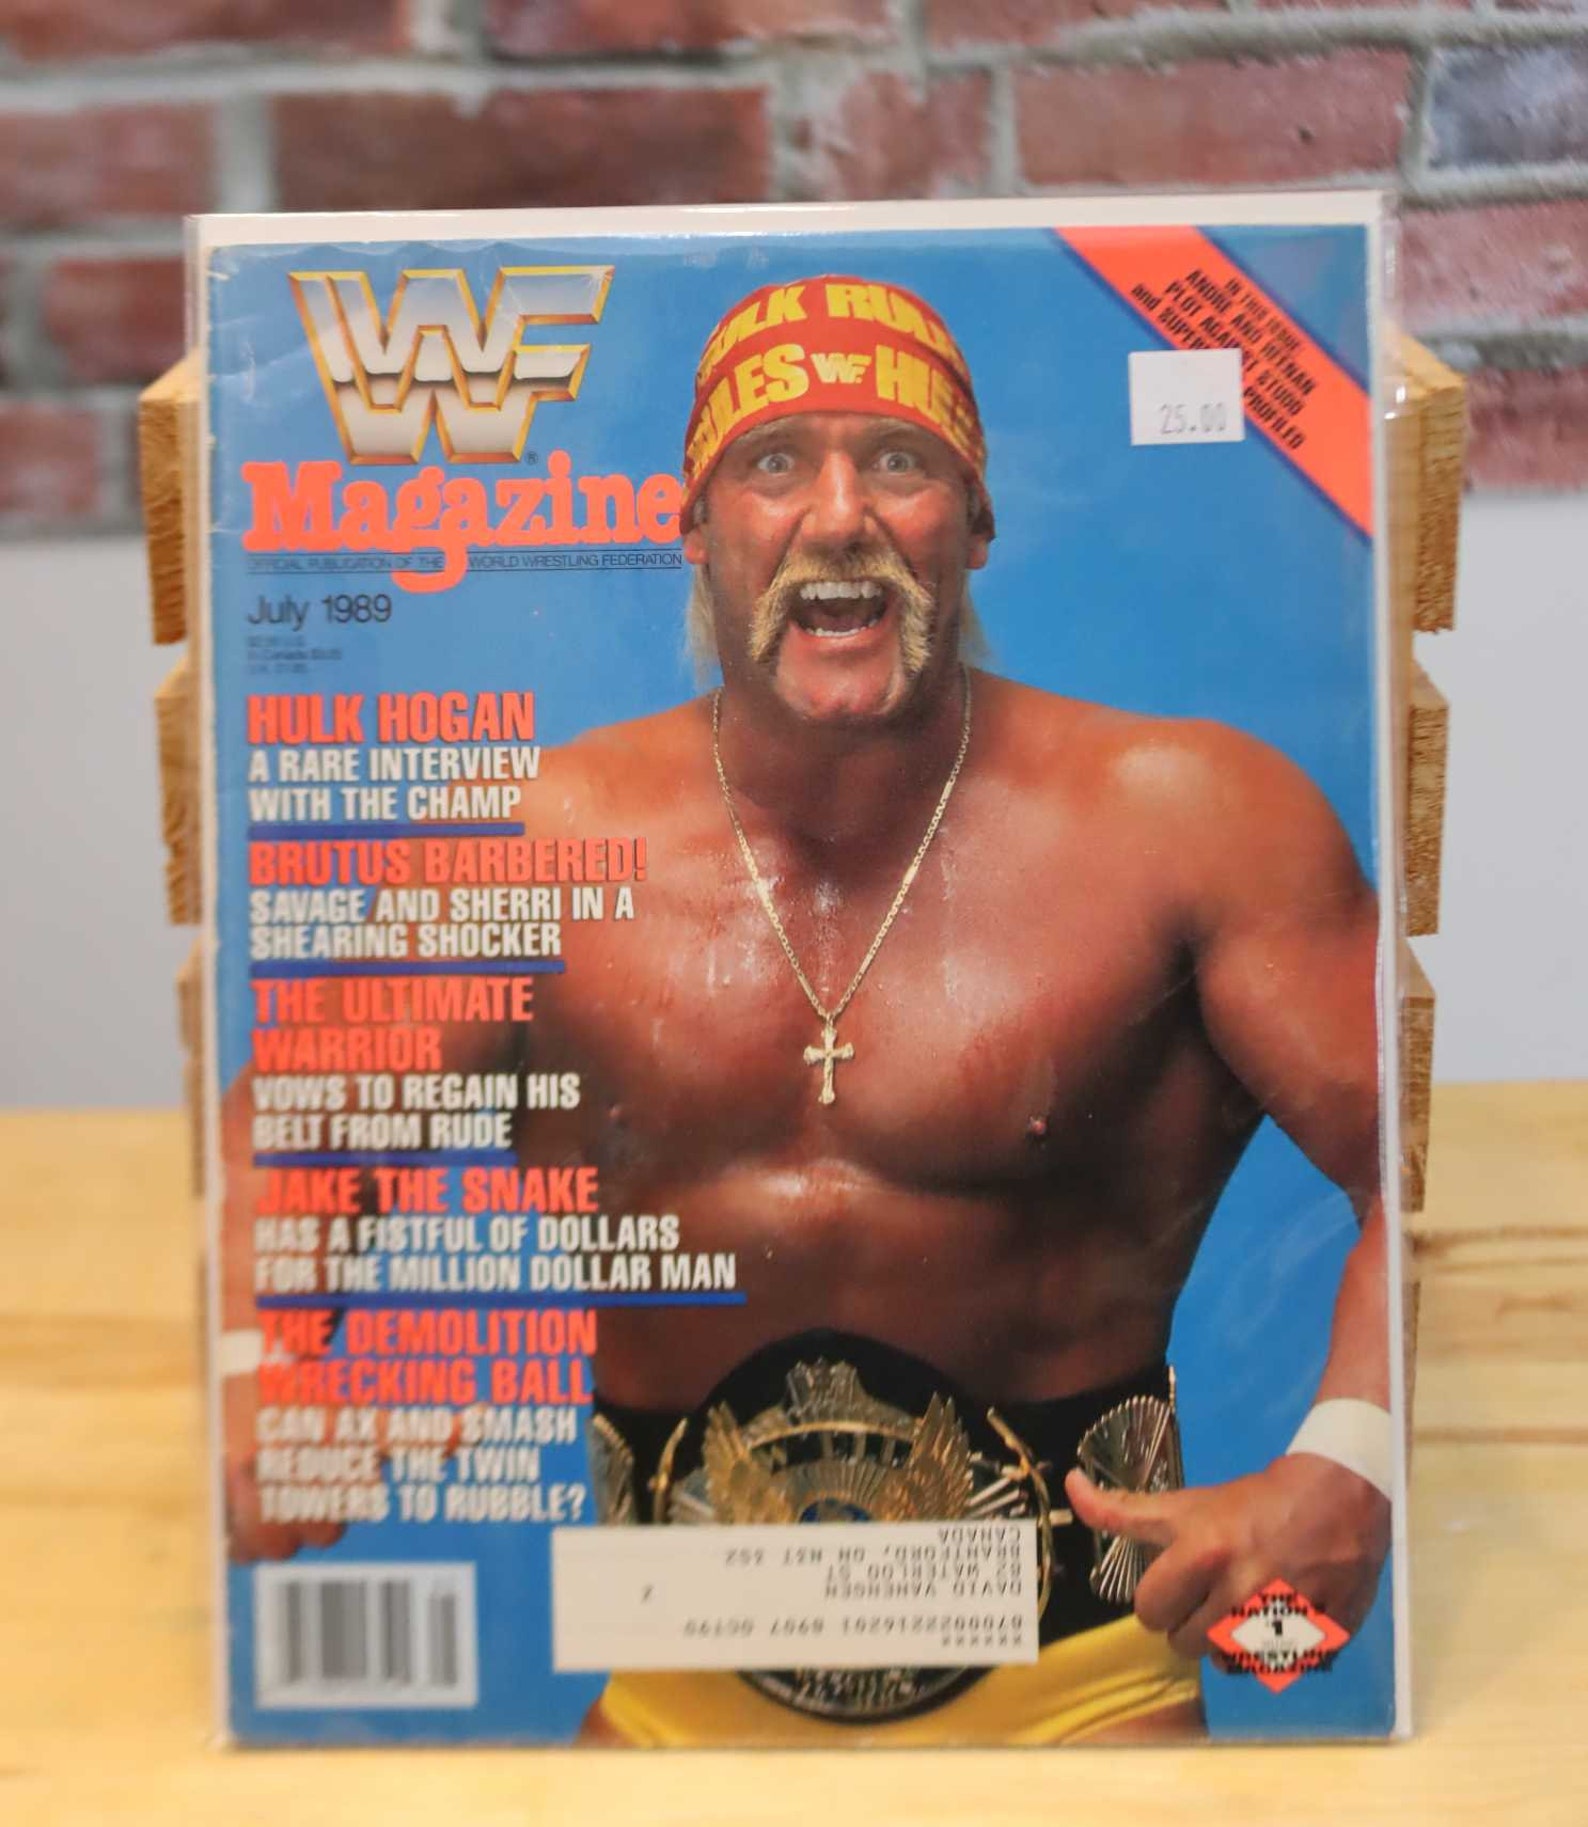 Original WWF WWE Vintage Wrestling Magazine Hulk Hogan july 1989 - Etsy UK